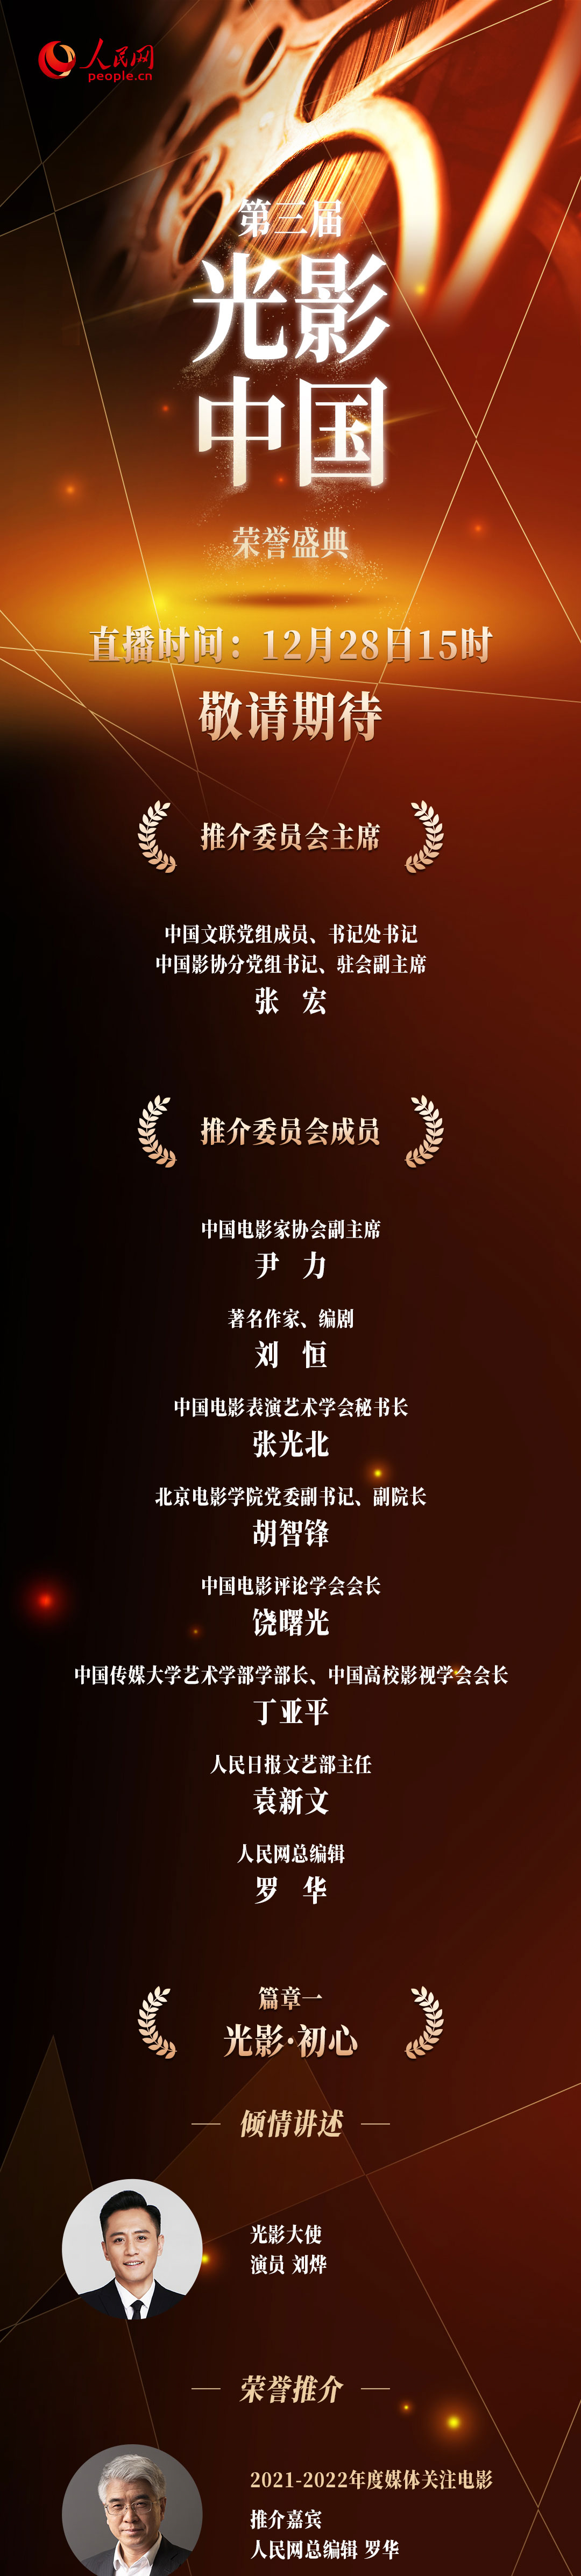 全程回放：第三届“光影中国”荣誉盛典 12项荣誉揭晓